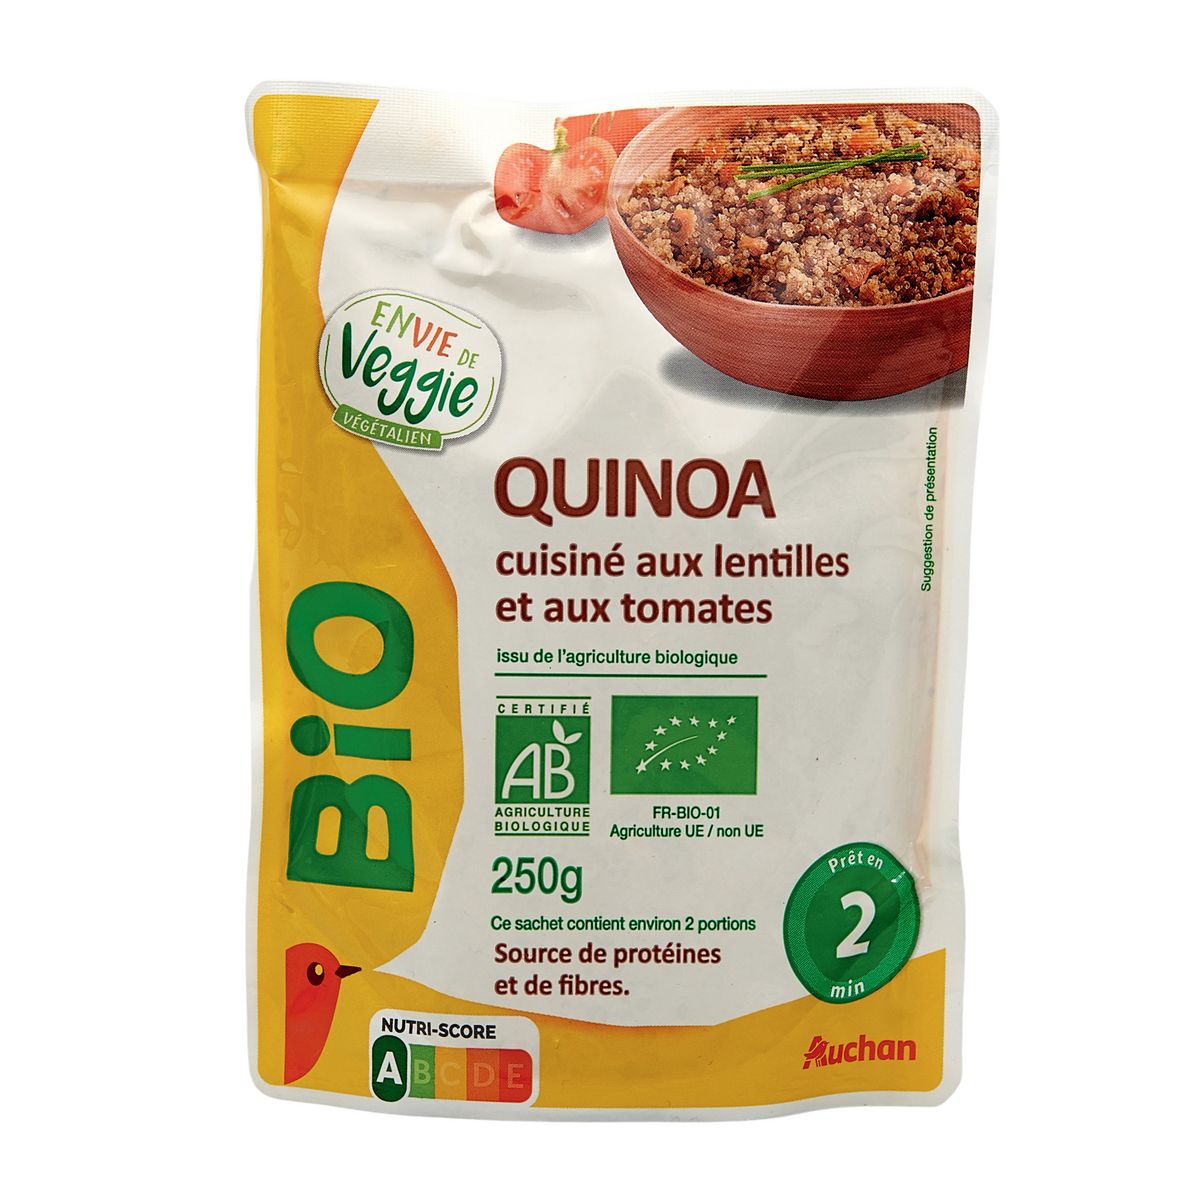 AUCHAN BIO Quinoa cuisiné aux lentilles et tomates sachet express 1-2 personnes 250g